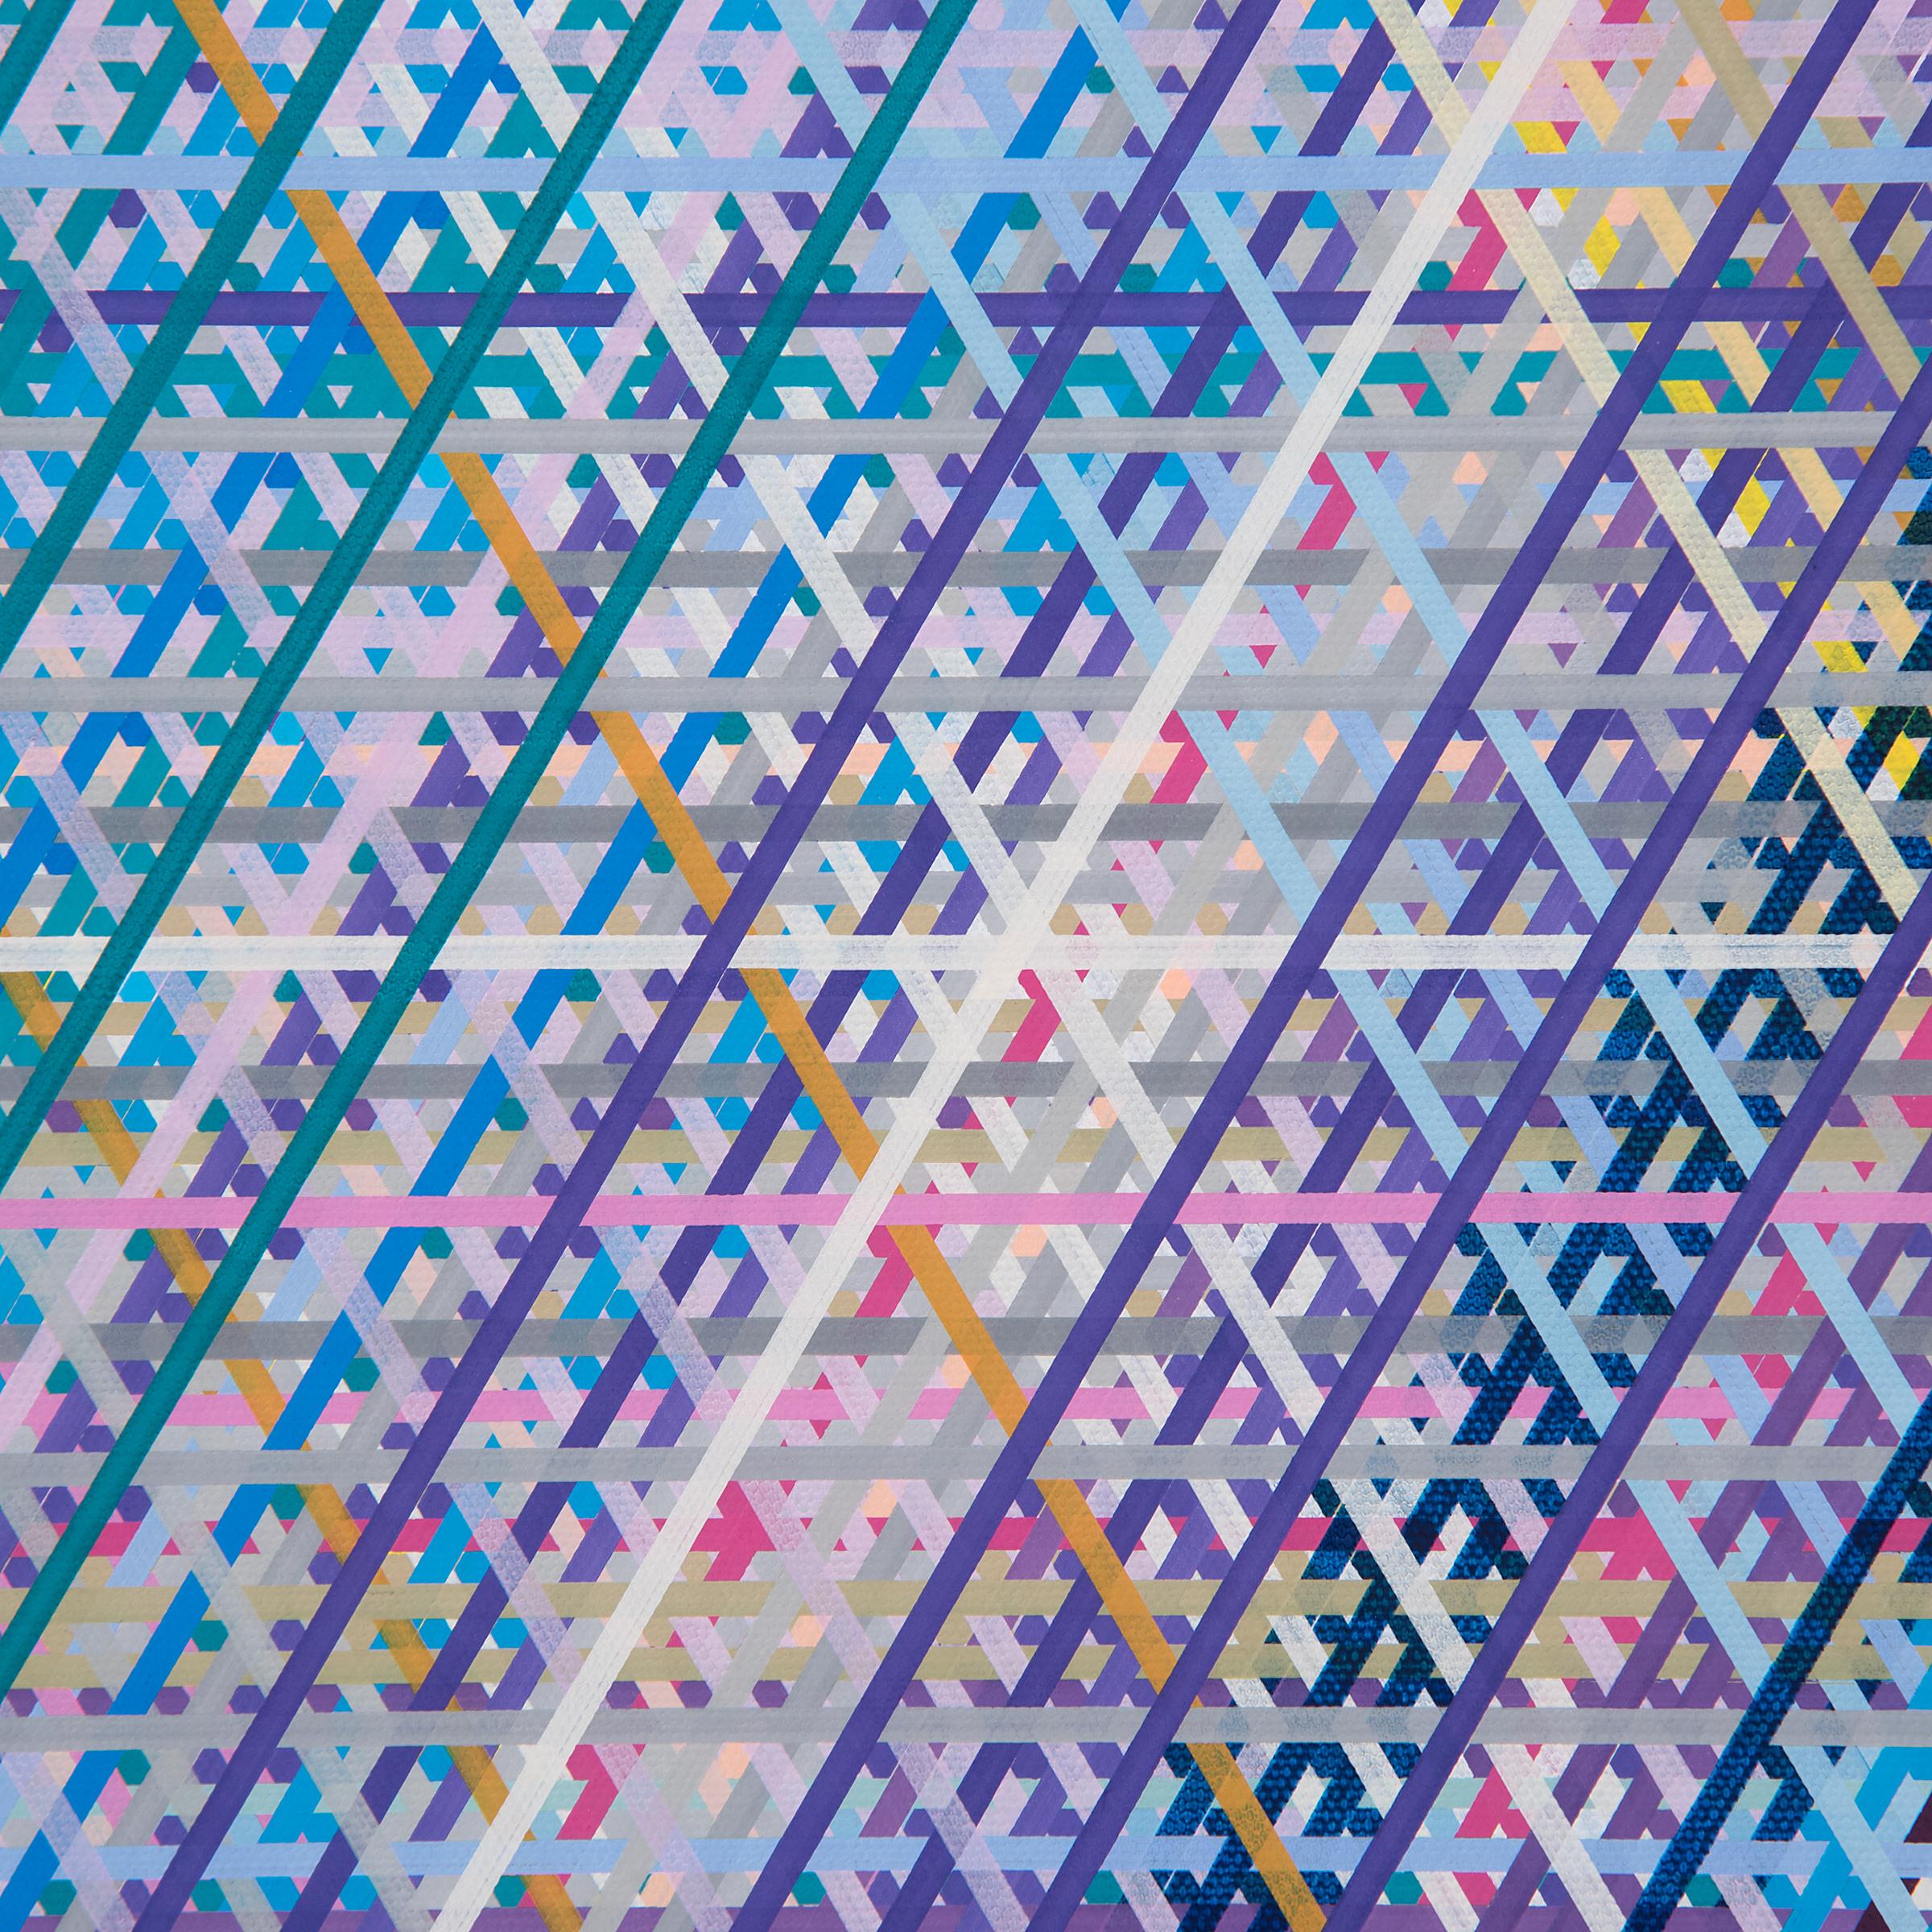 Inspiriert von Teleskopbildern aus dem Weltraum, zeitgenössischen Computerkompressionsalgorithmen und früher ungegenständlicher Kunst, erschafft der Chicagoer Künstler Jan Pieter Fokkens Bilder, die jenseits unserer Vorstellungskraft existieren.